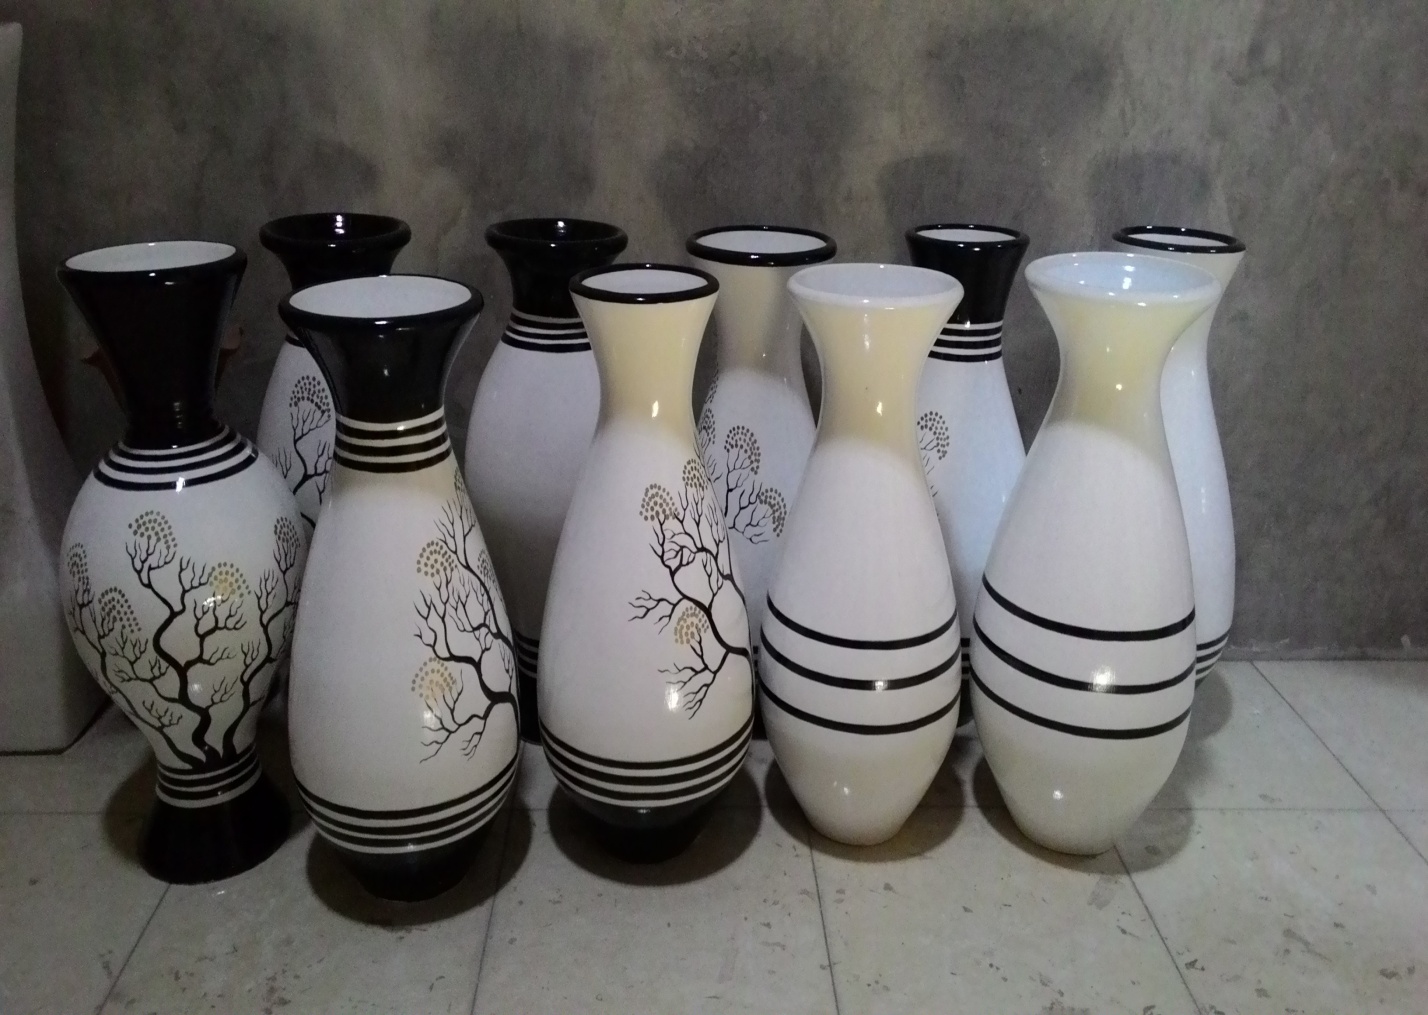 Jual Beli Kerajinan Keramik di Indonesia, Agen, Distributor, Supplier